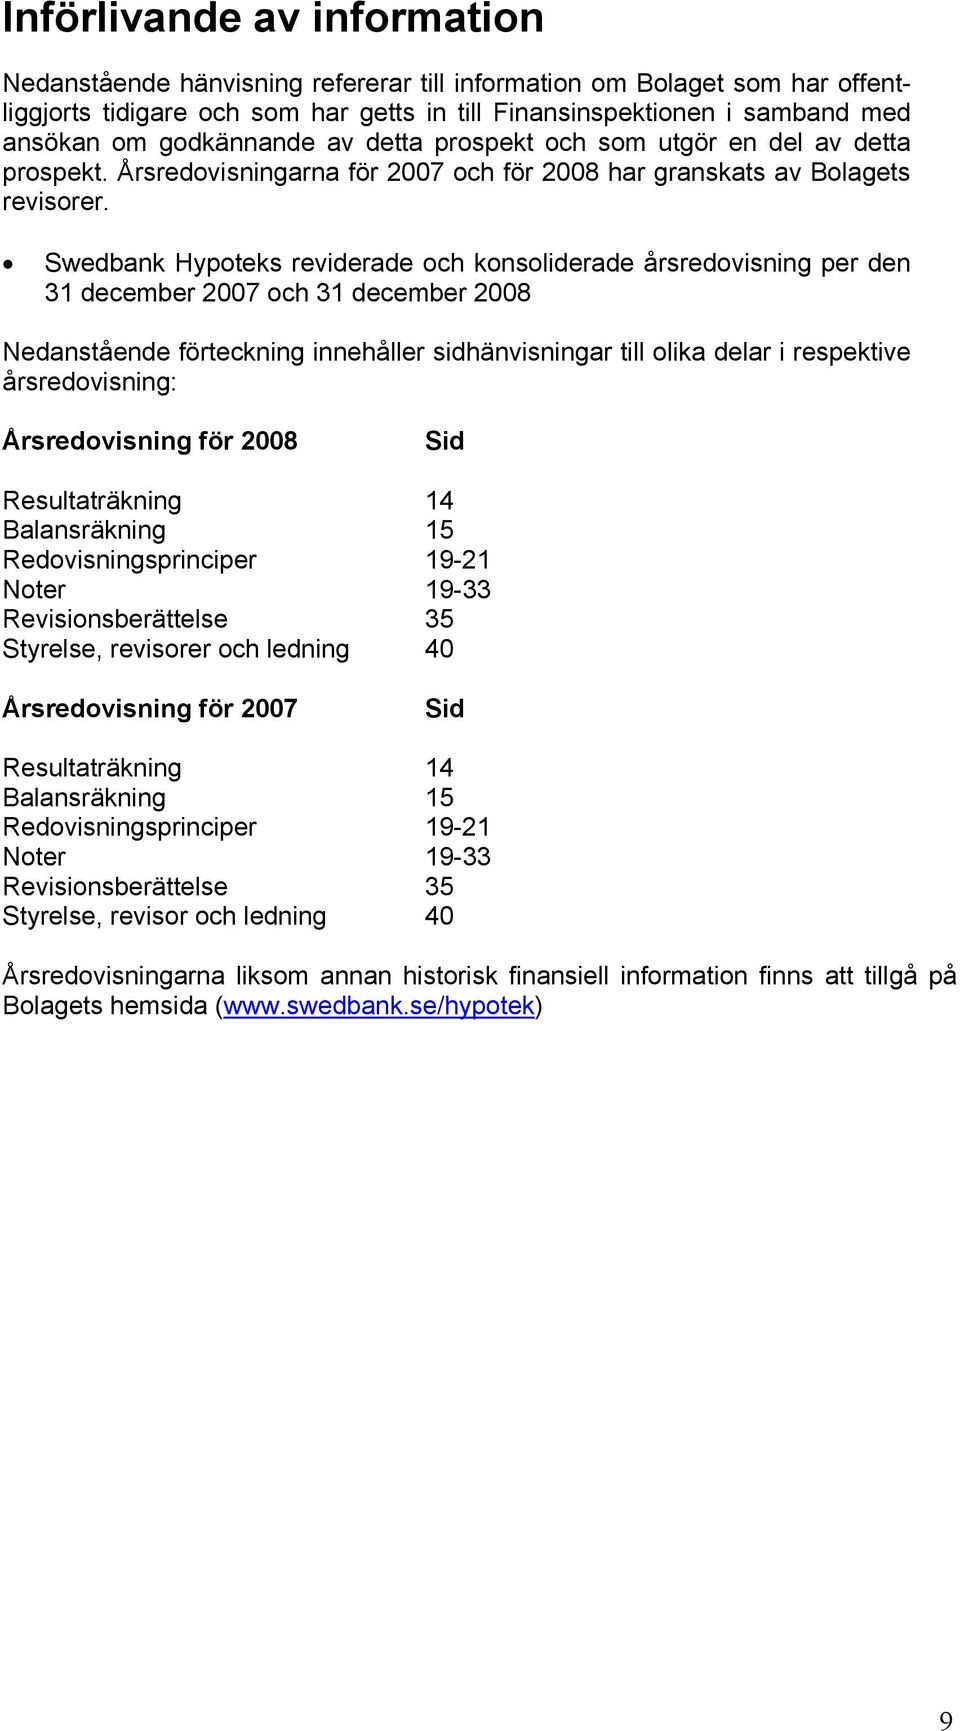 Swedbank Hypoteks reviderade och konsoliderade årsredovisning per den 31 december 2007 och 31 december 2008 Nedanstående förteckning innehåller sidhänvisningar till olika delar i respektive